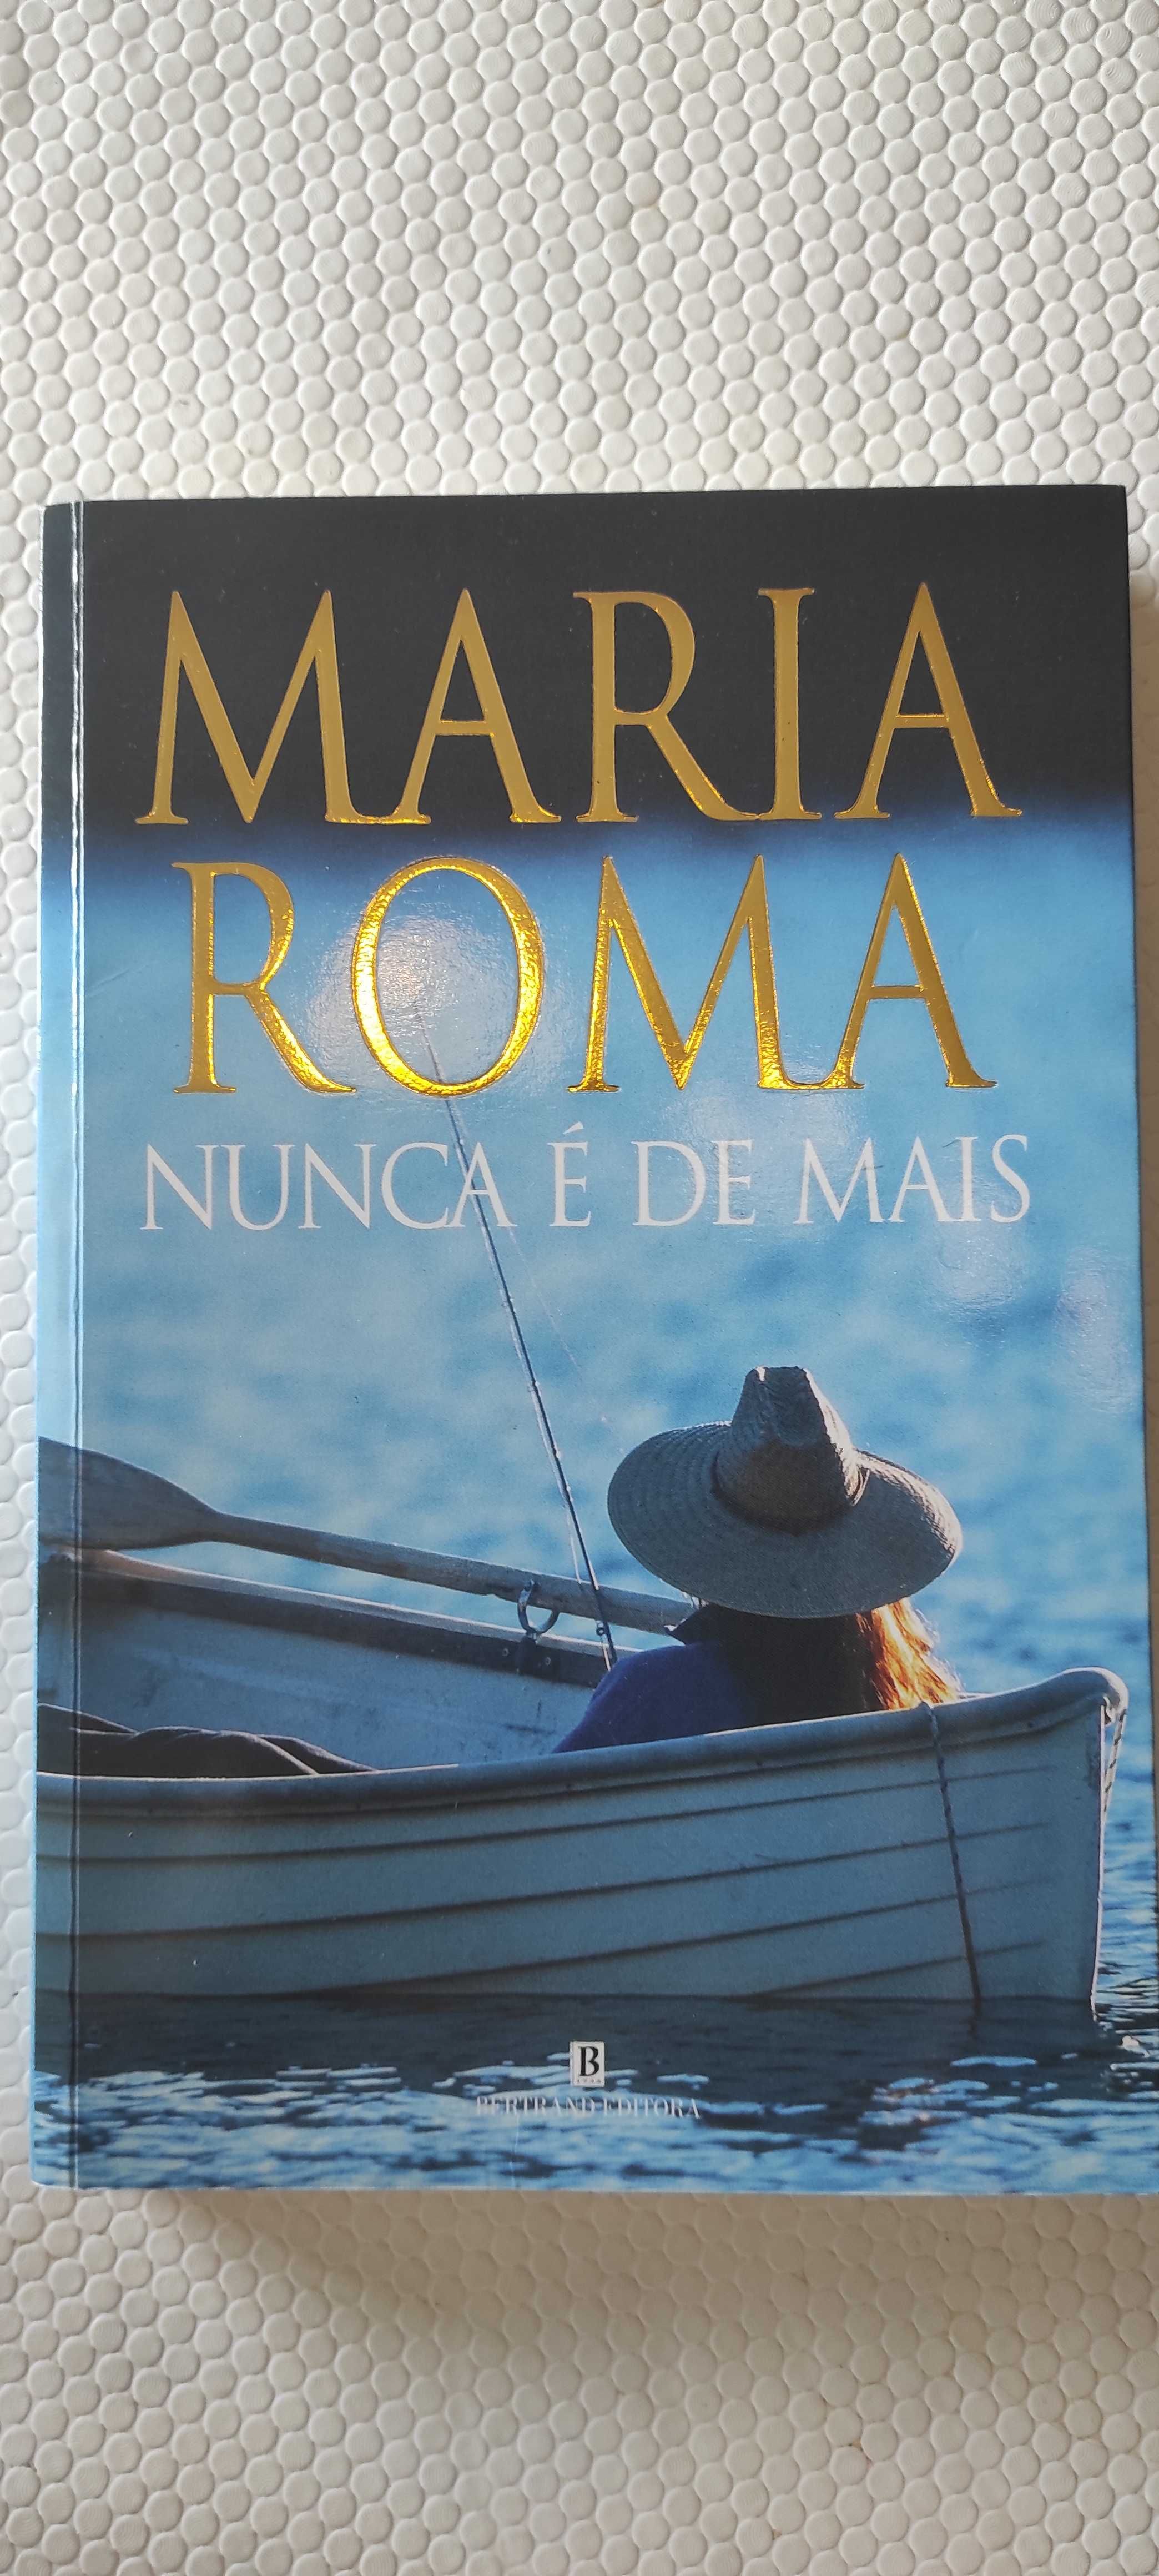 Livro "Nunca é De Mais" de Maria Roma